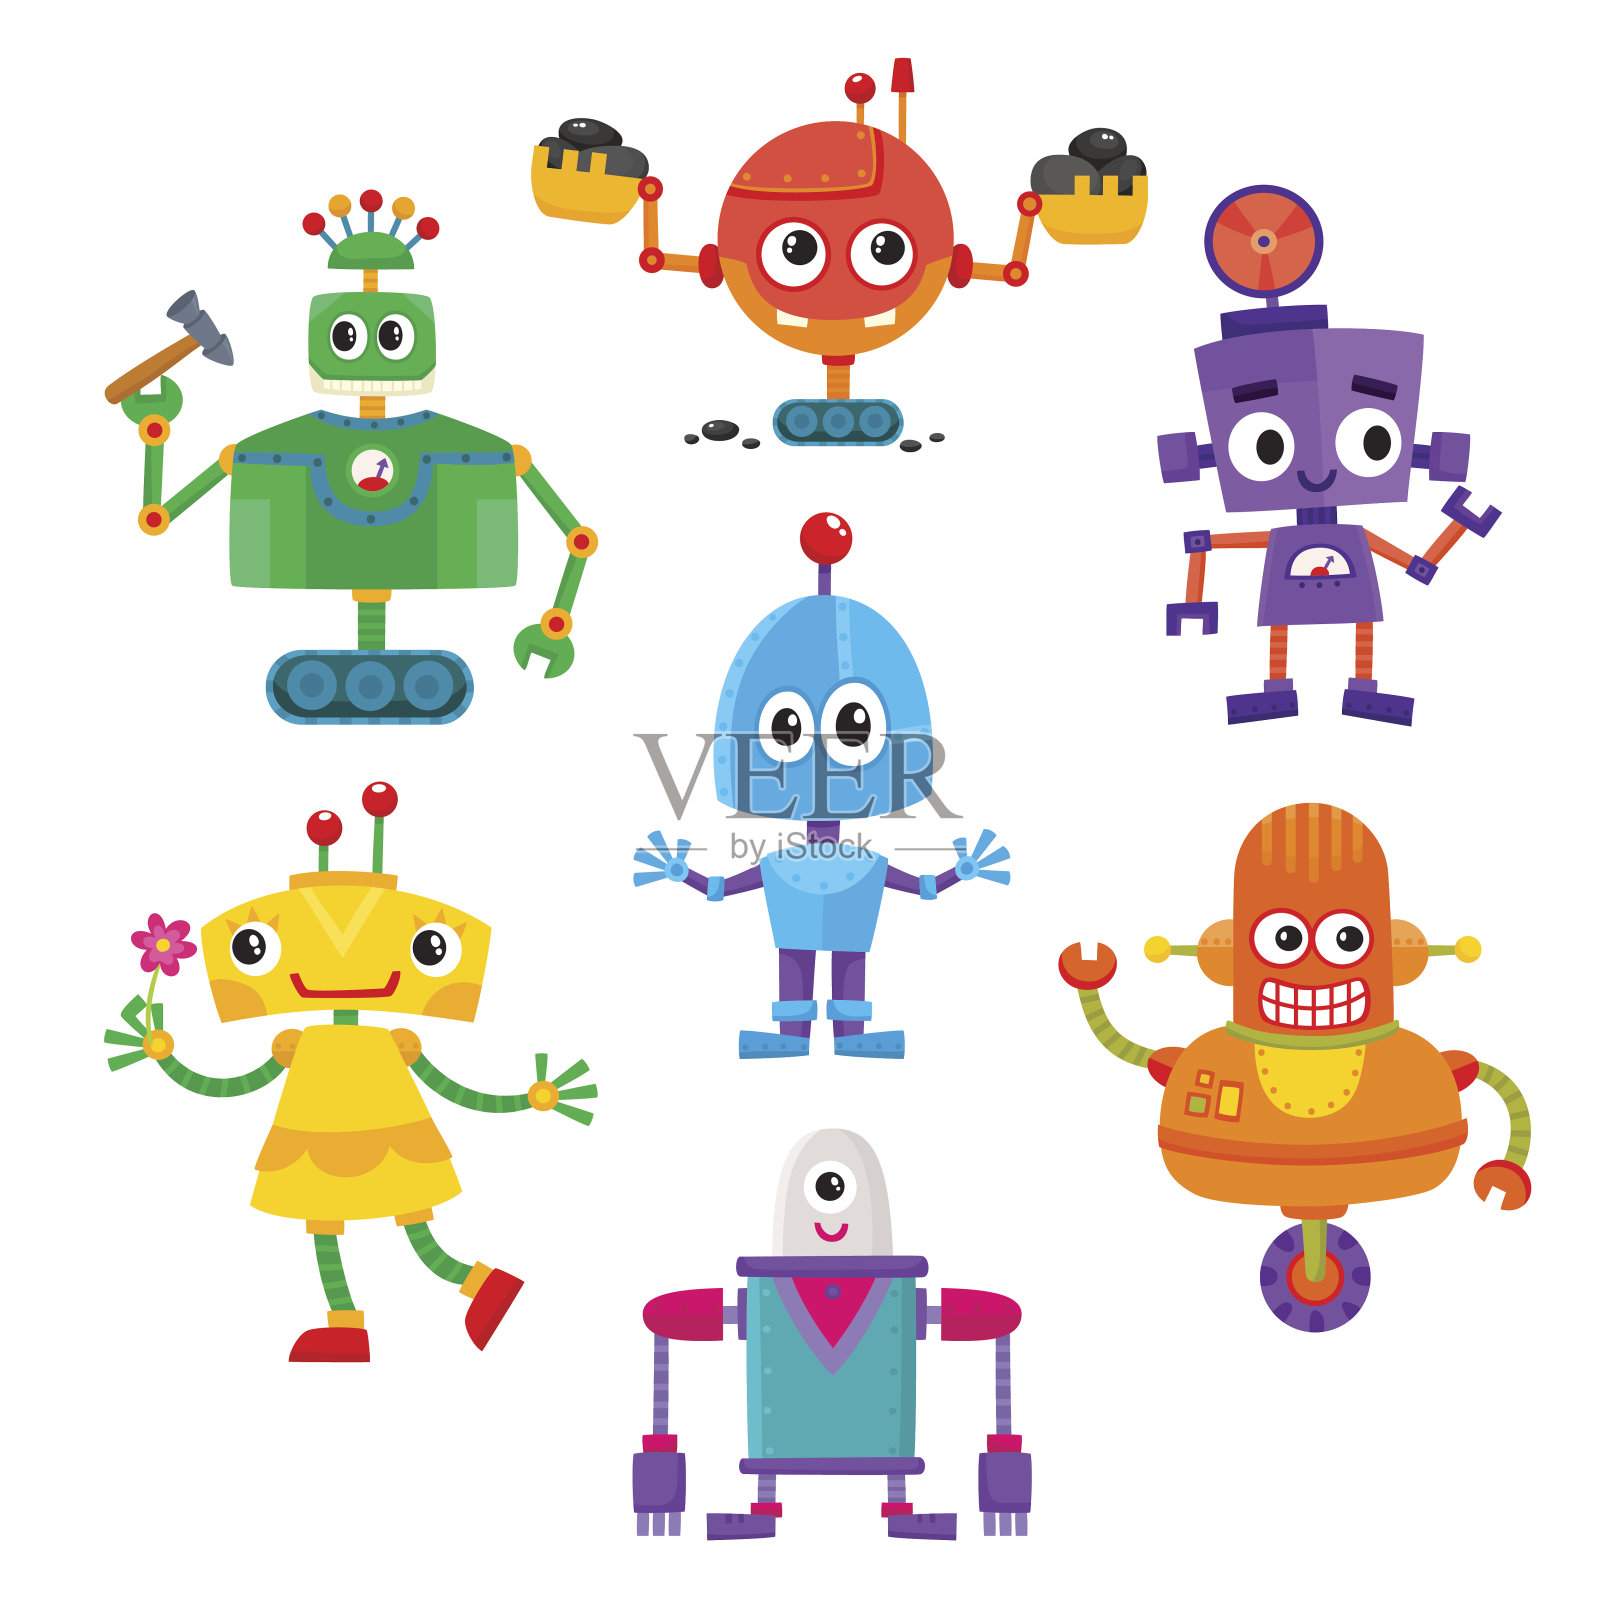 一套可爱和有趣的彩色机器人角色插画图片素材